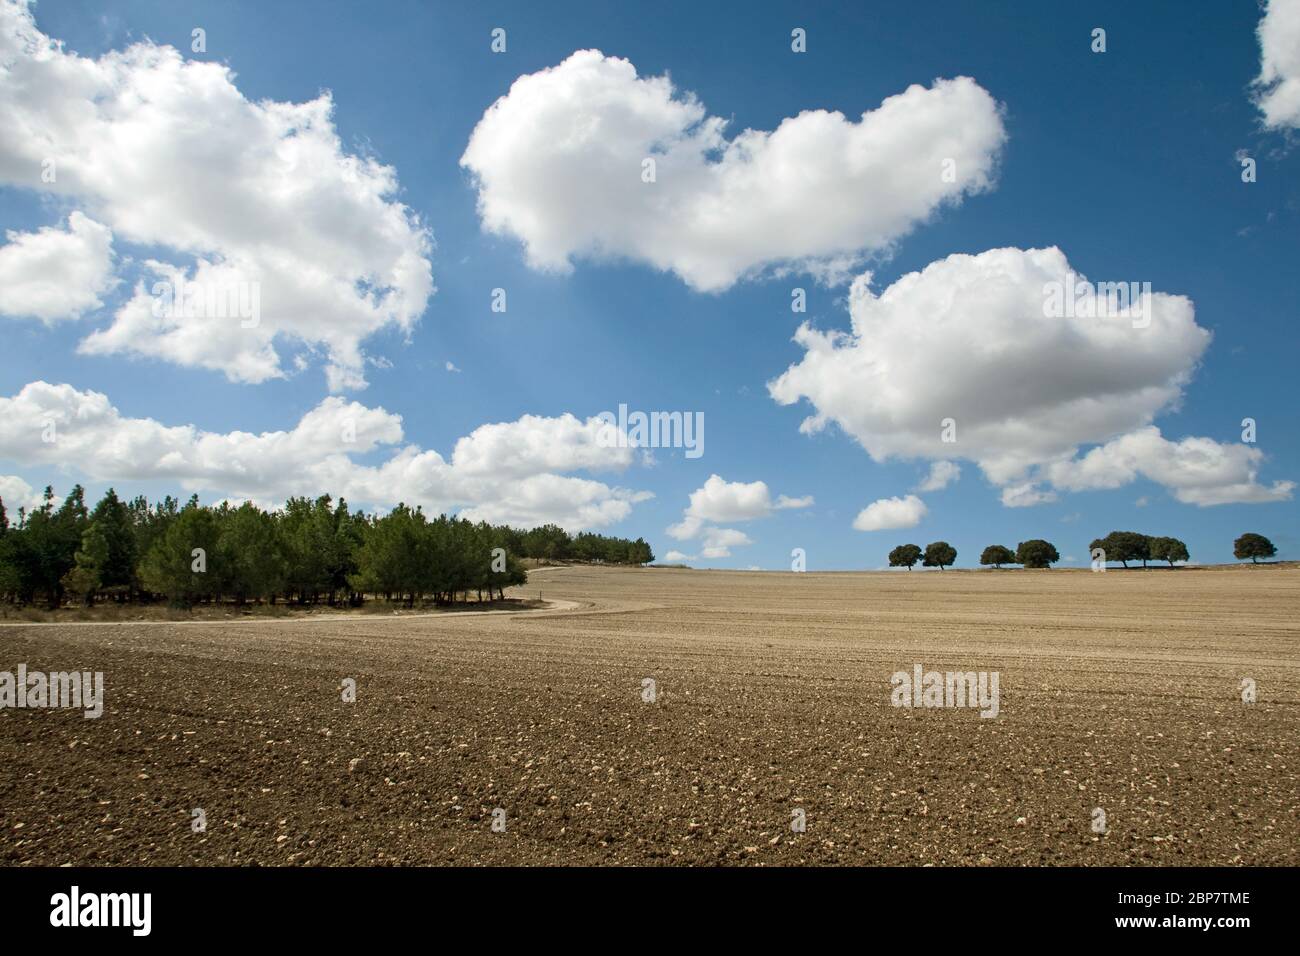 Paesaggio suggestivo. Nuvole bianche su un cielo blu Foto Stock